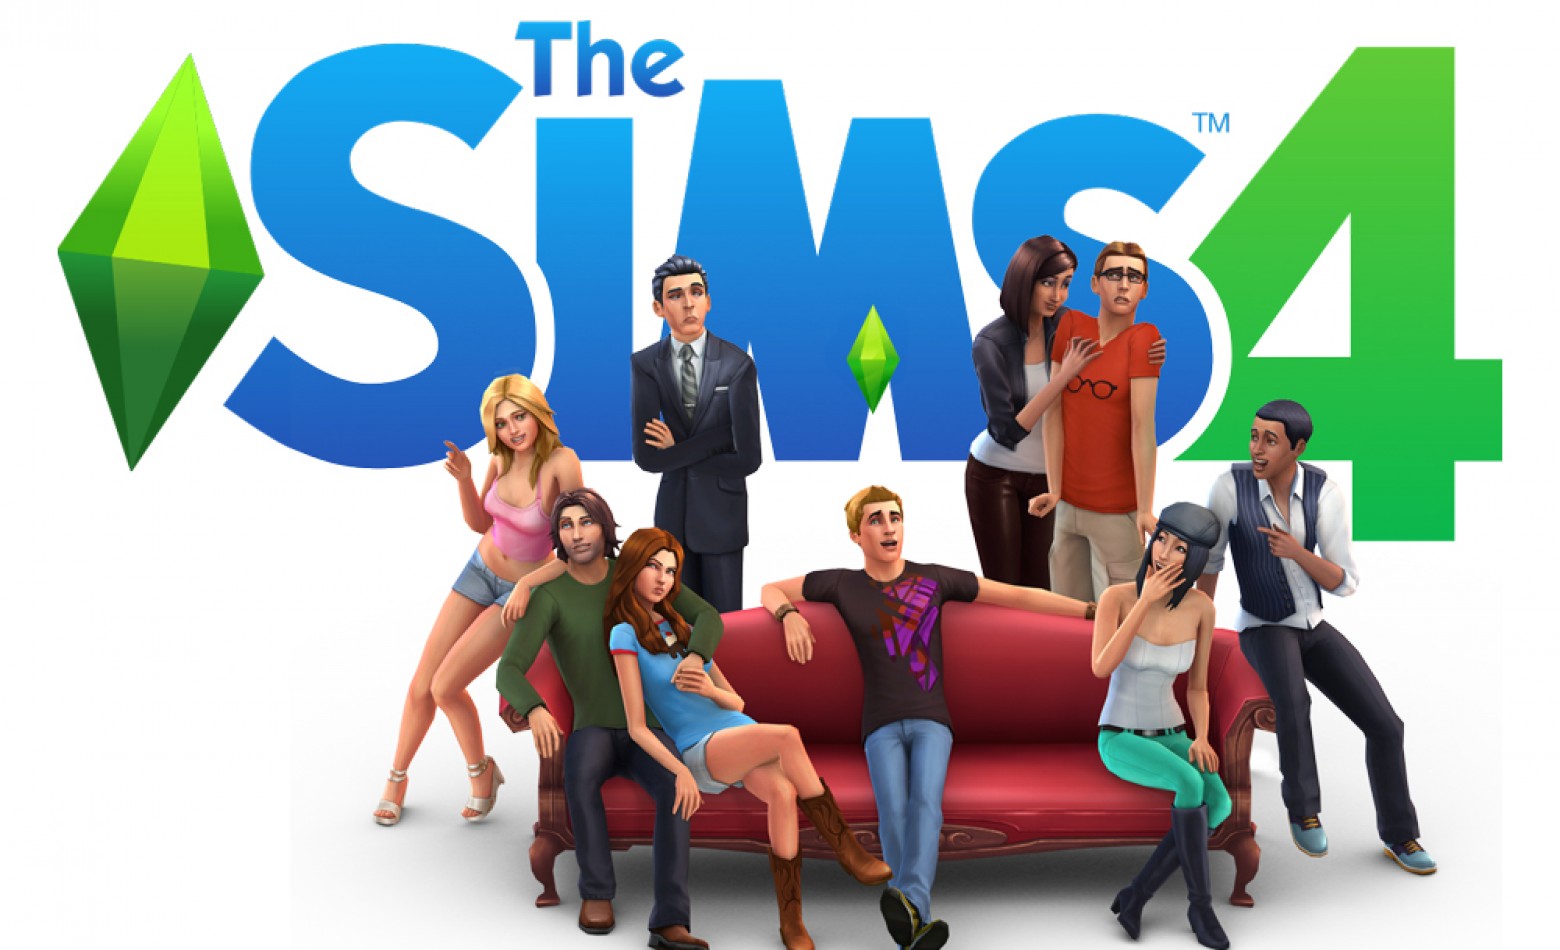 Edição limitada de The Sims 4 chegará ao Brasil custando R$ 130